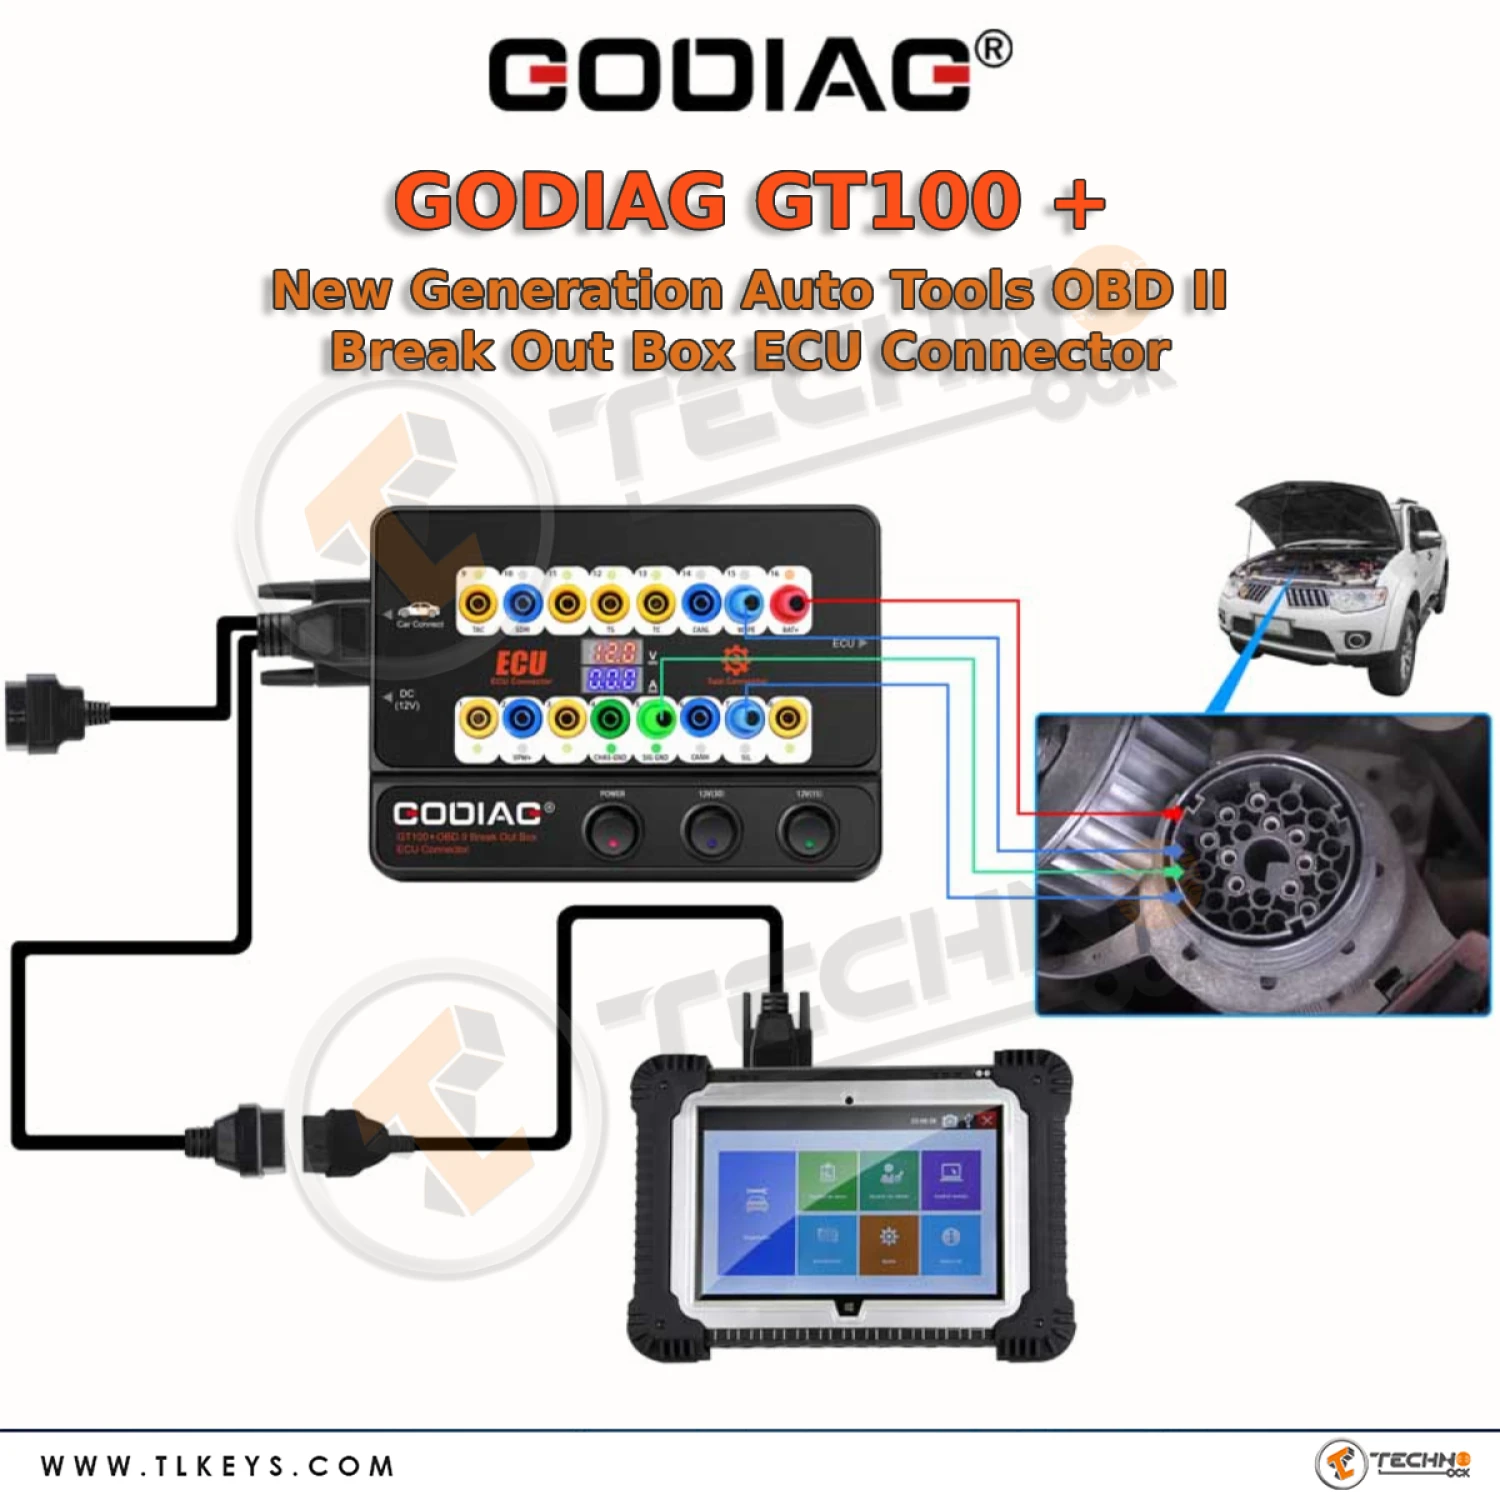 GODIAG GT100 Auto Tools OBDII Break Out Box ECU Connector